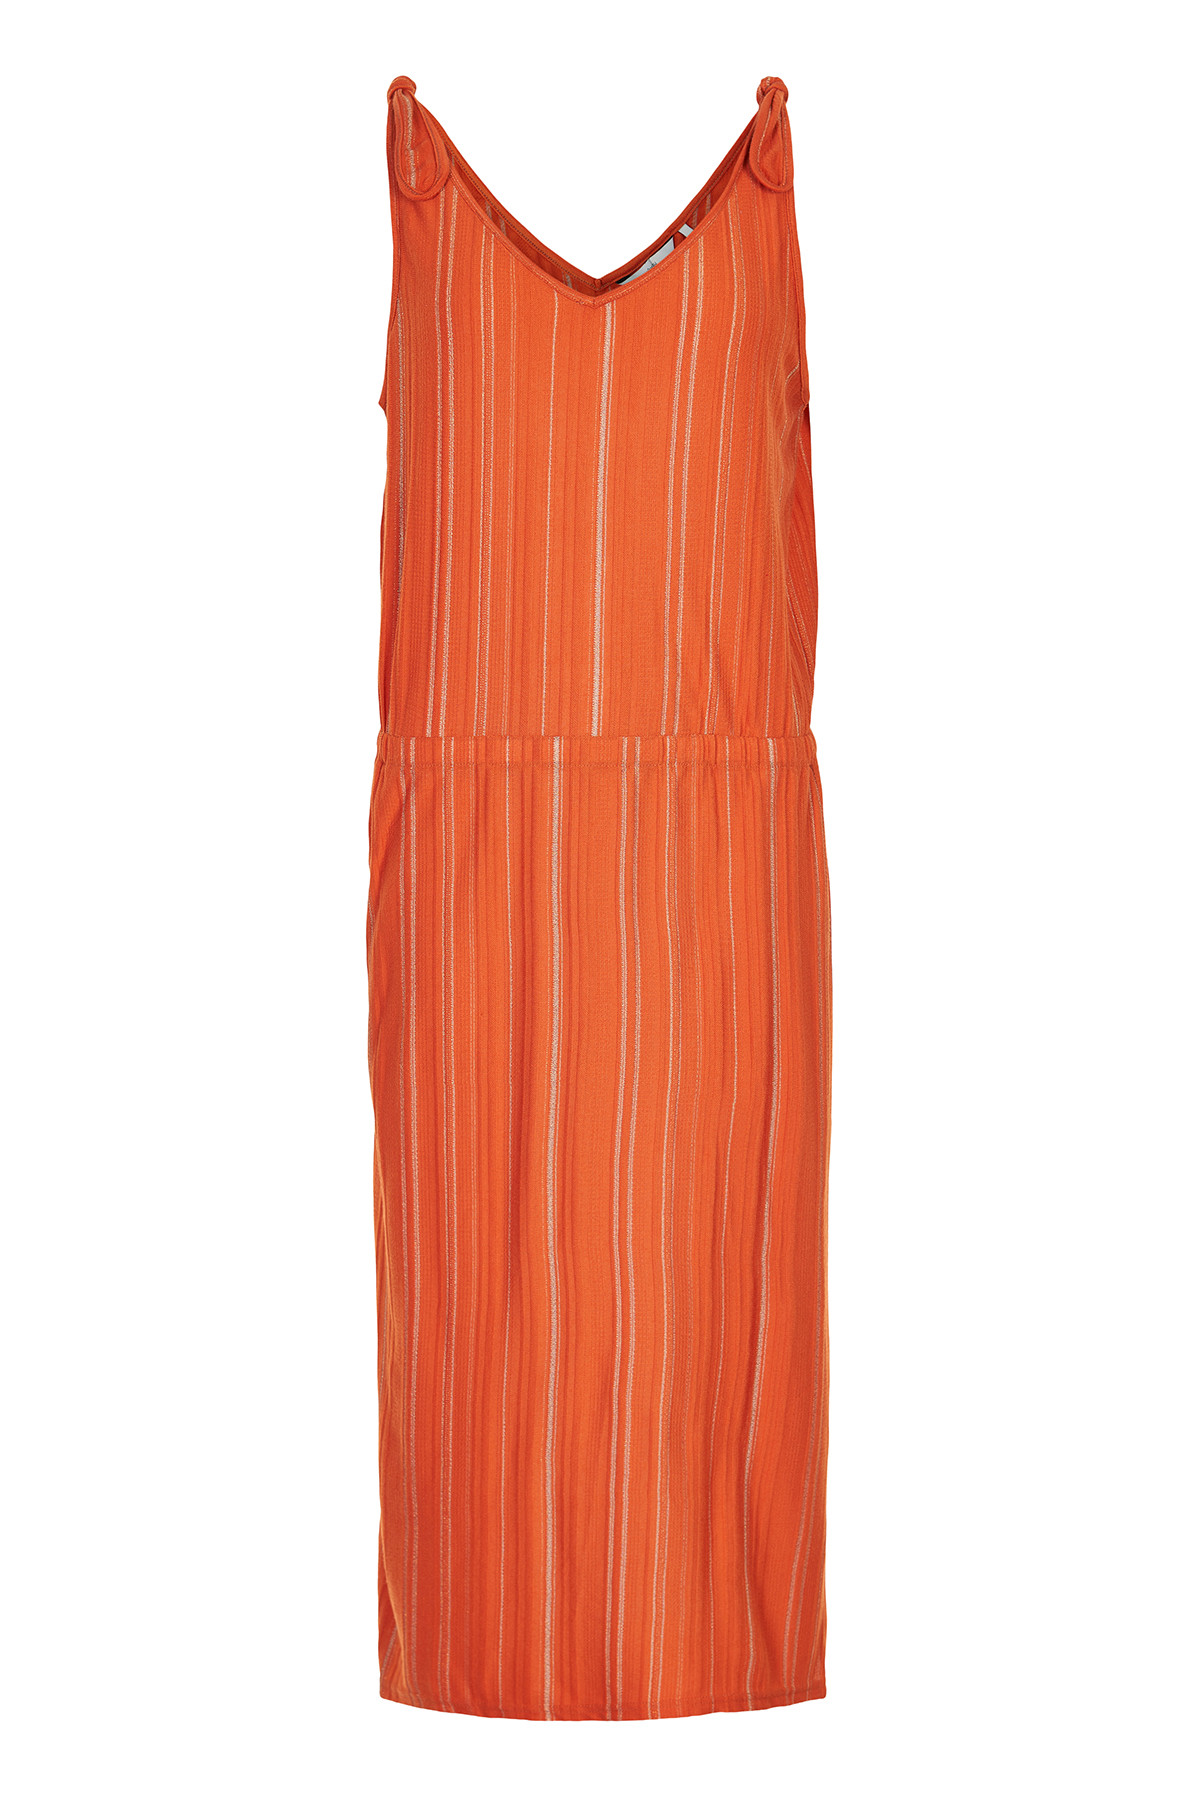 Nümph Nubridger Jersey Kjole, Farve: Orange, Størrelse: S, Dame